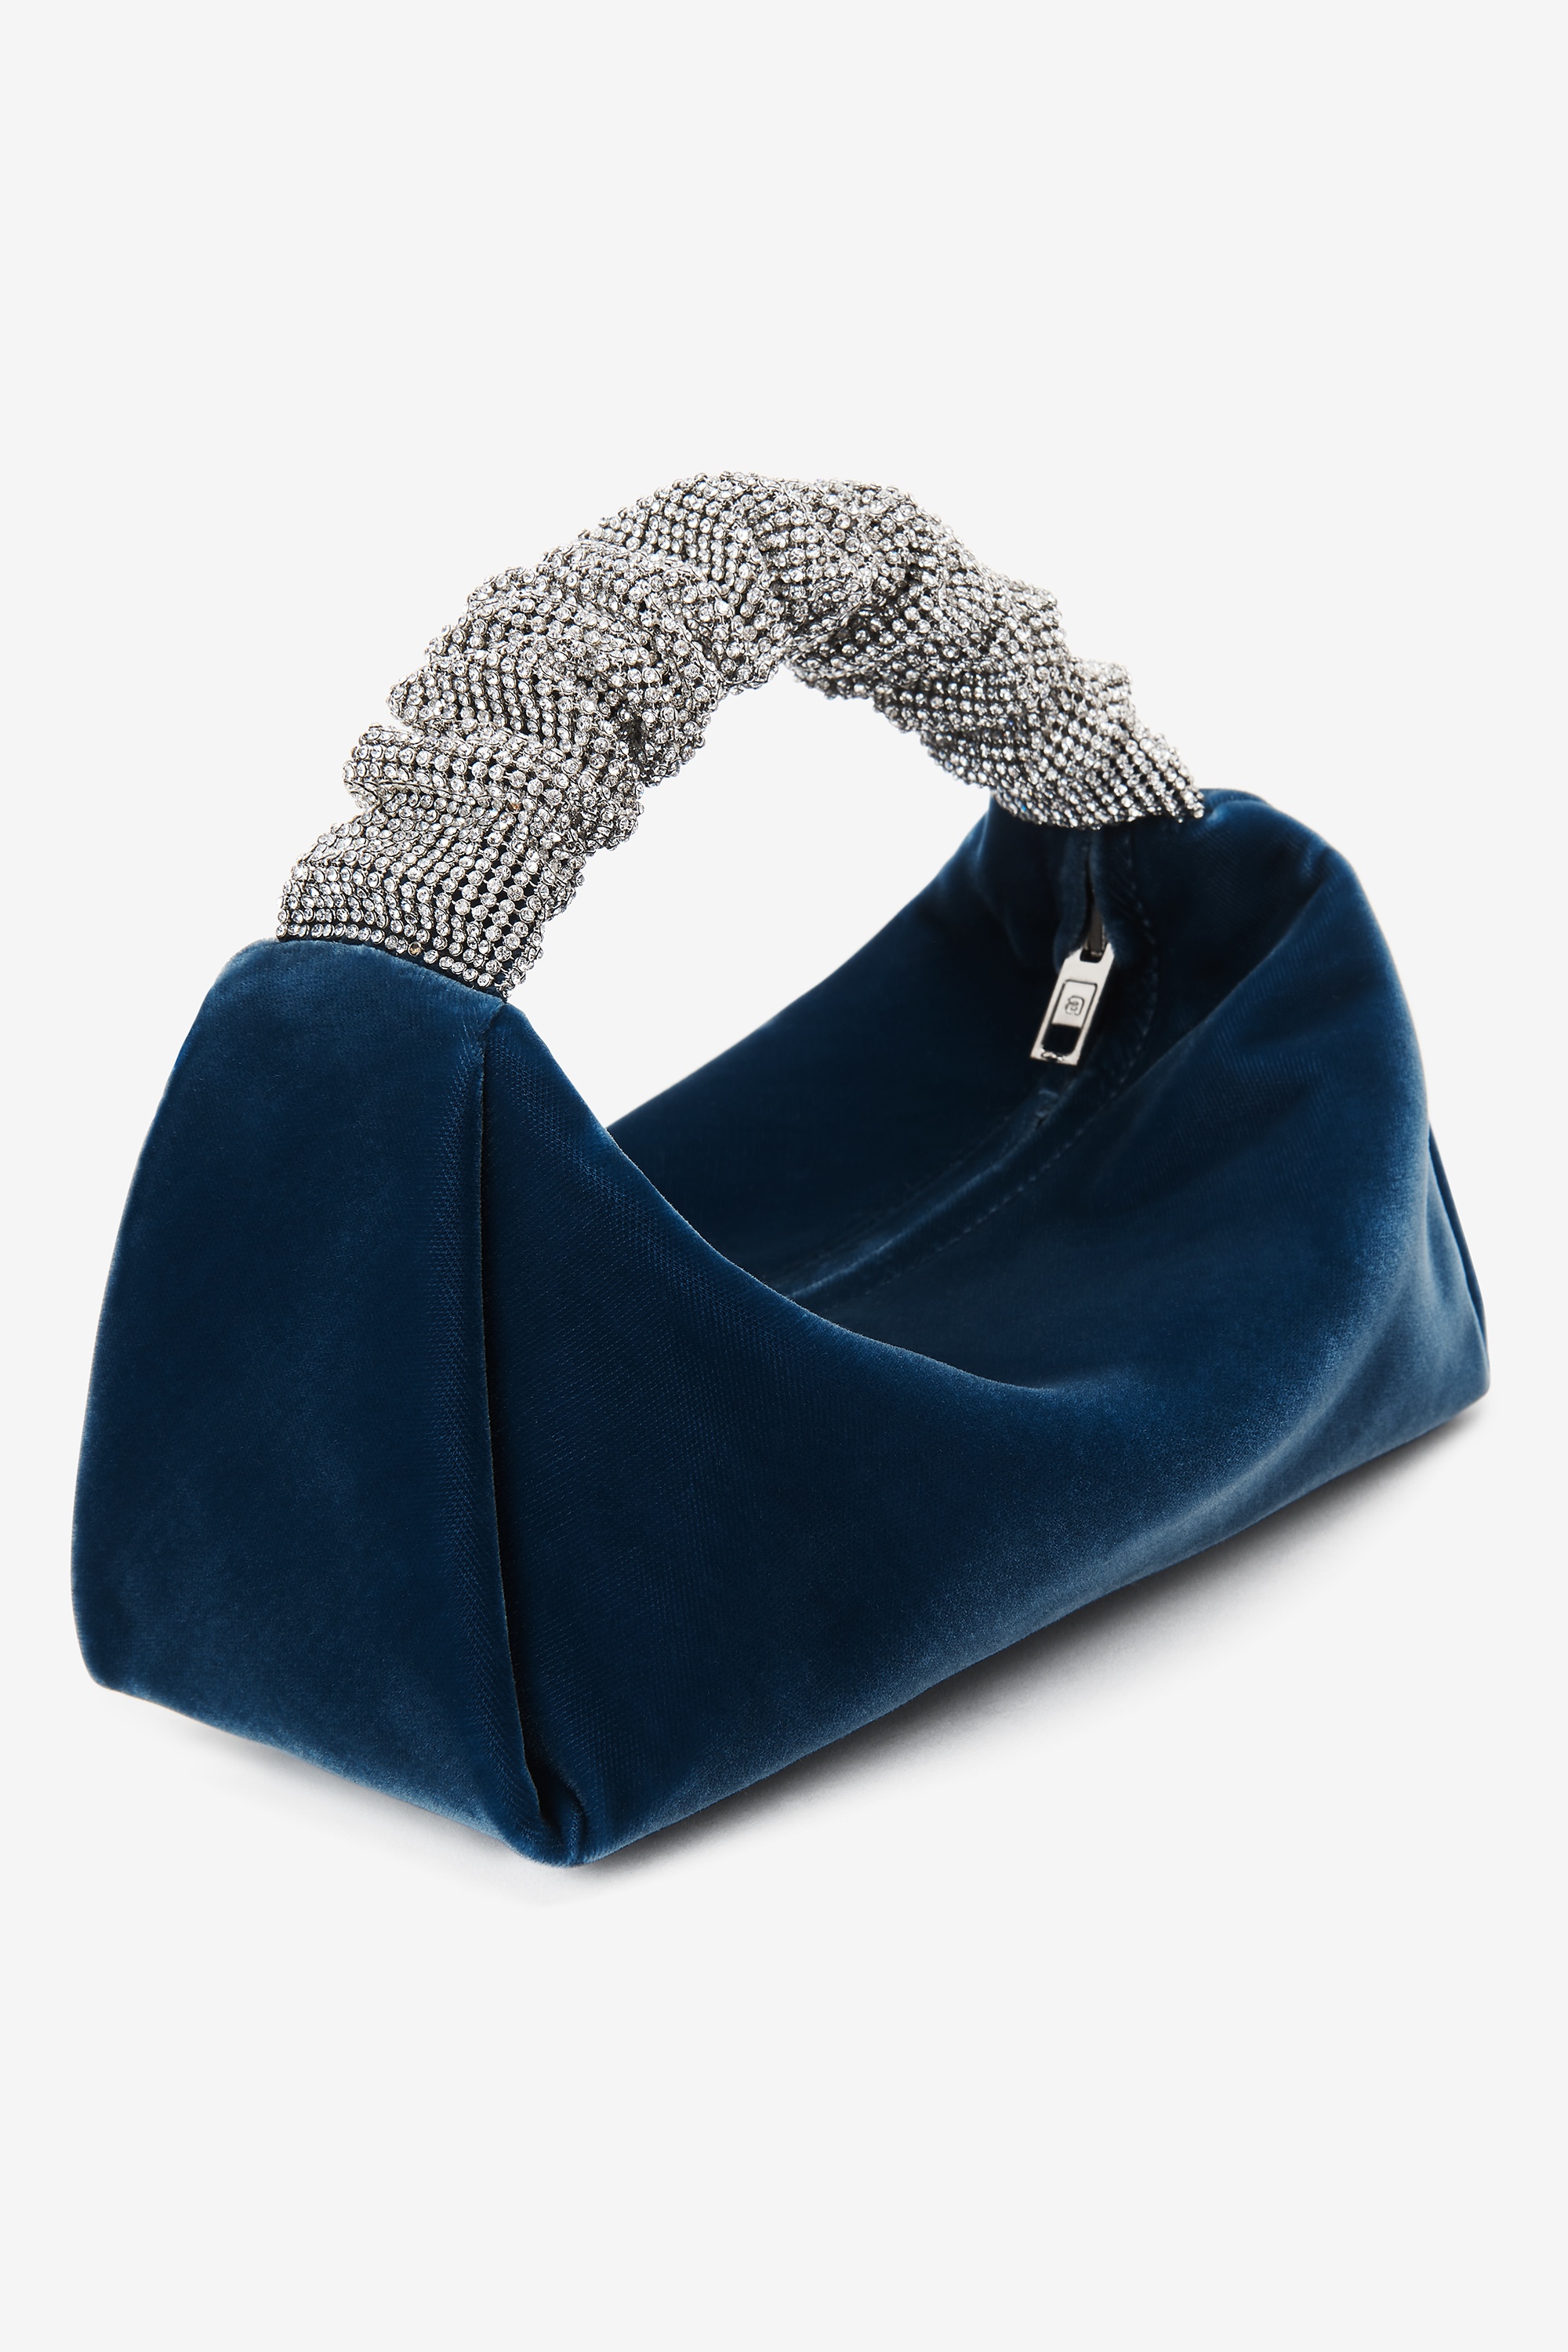 Alexander Wang scrunchie mini bag in velvet crystal | REVERSIBLE